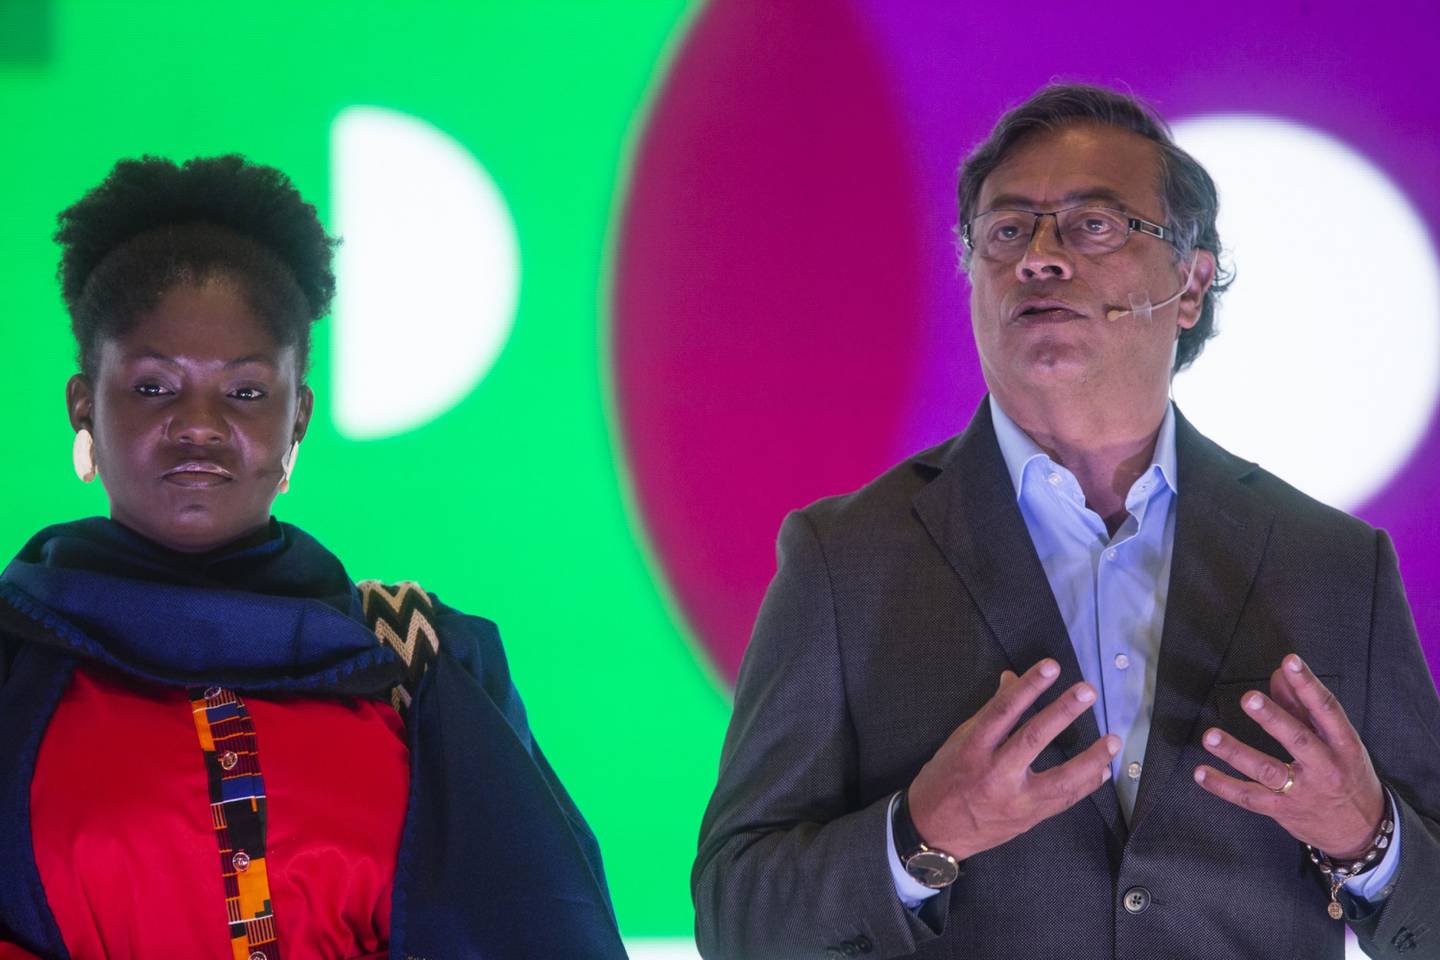 El candidato presidencial, a la derecha, habla junto a Francia Márquez, candidata a la Vicepresidencia, durante una conferencia de prensa.